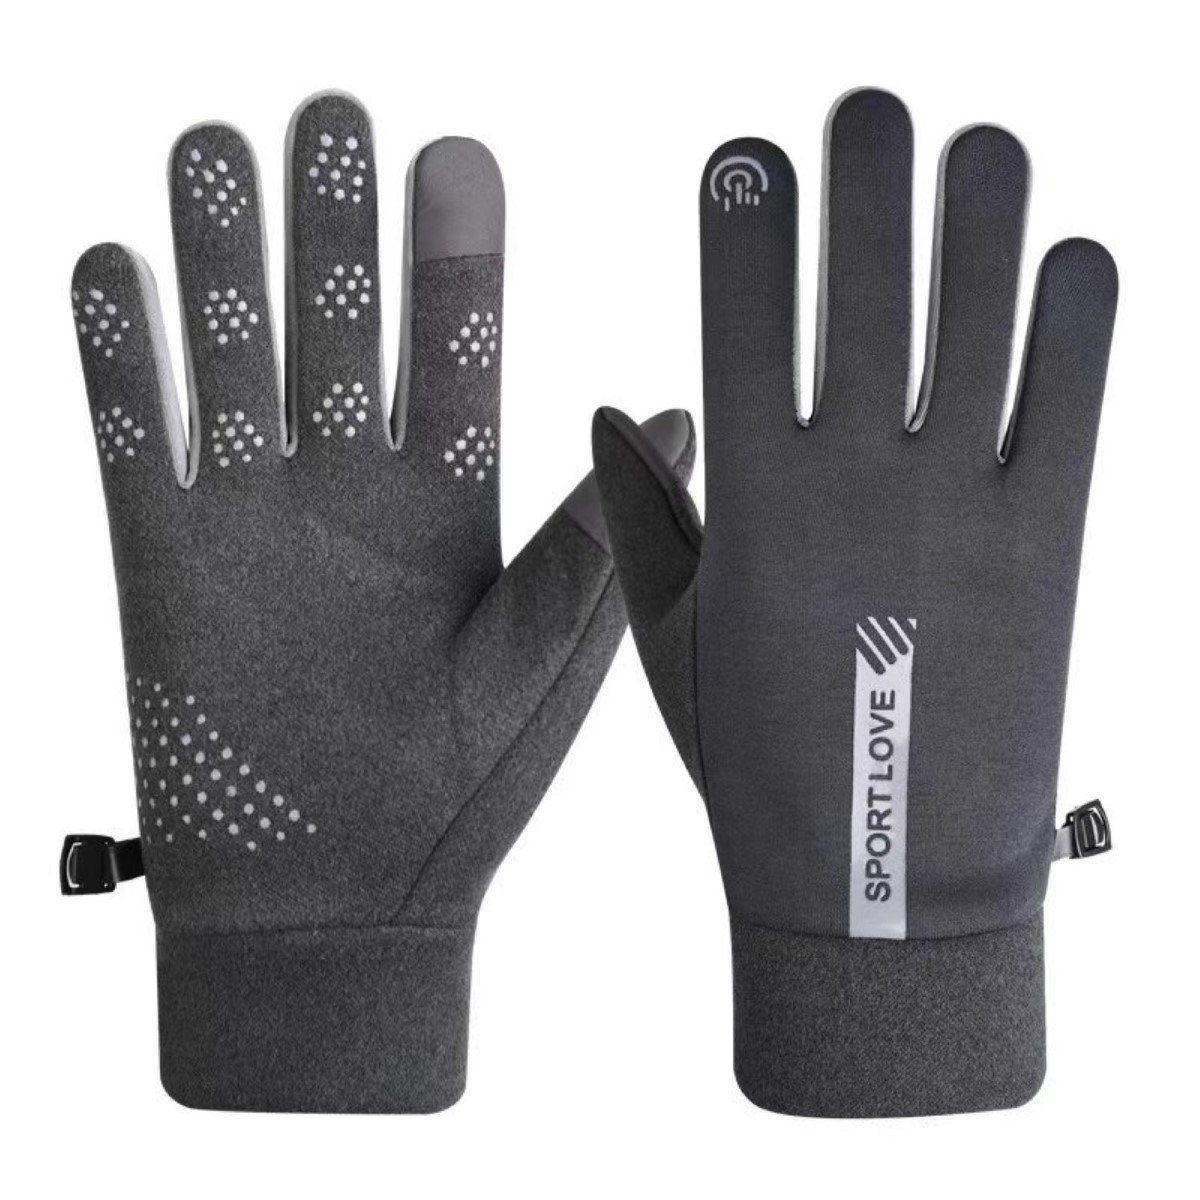 COFI 1453 Fäustlinge Winddichte Handy-Handschuhe für Damen und Herren Warmhaltend Grau